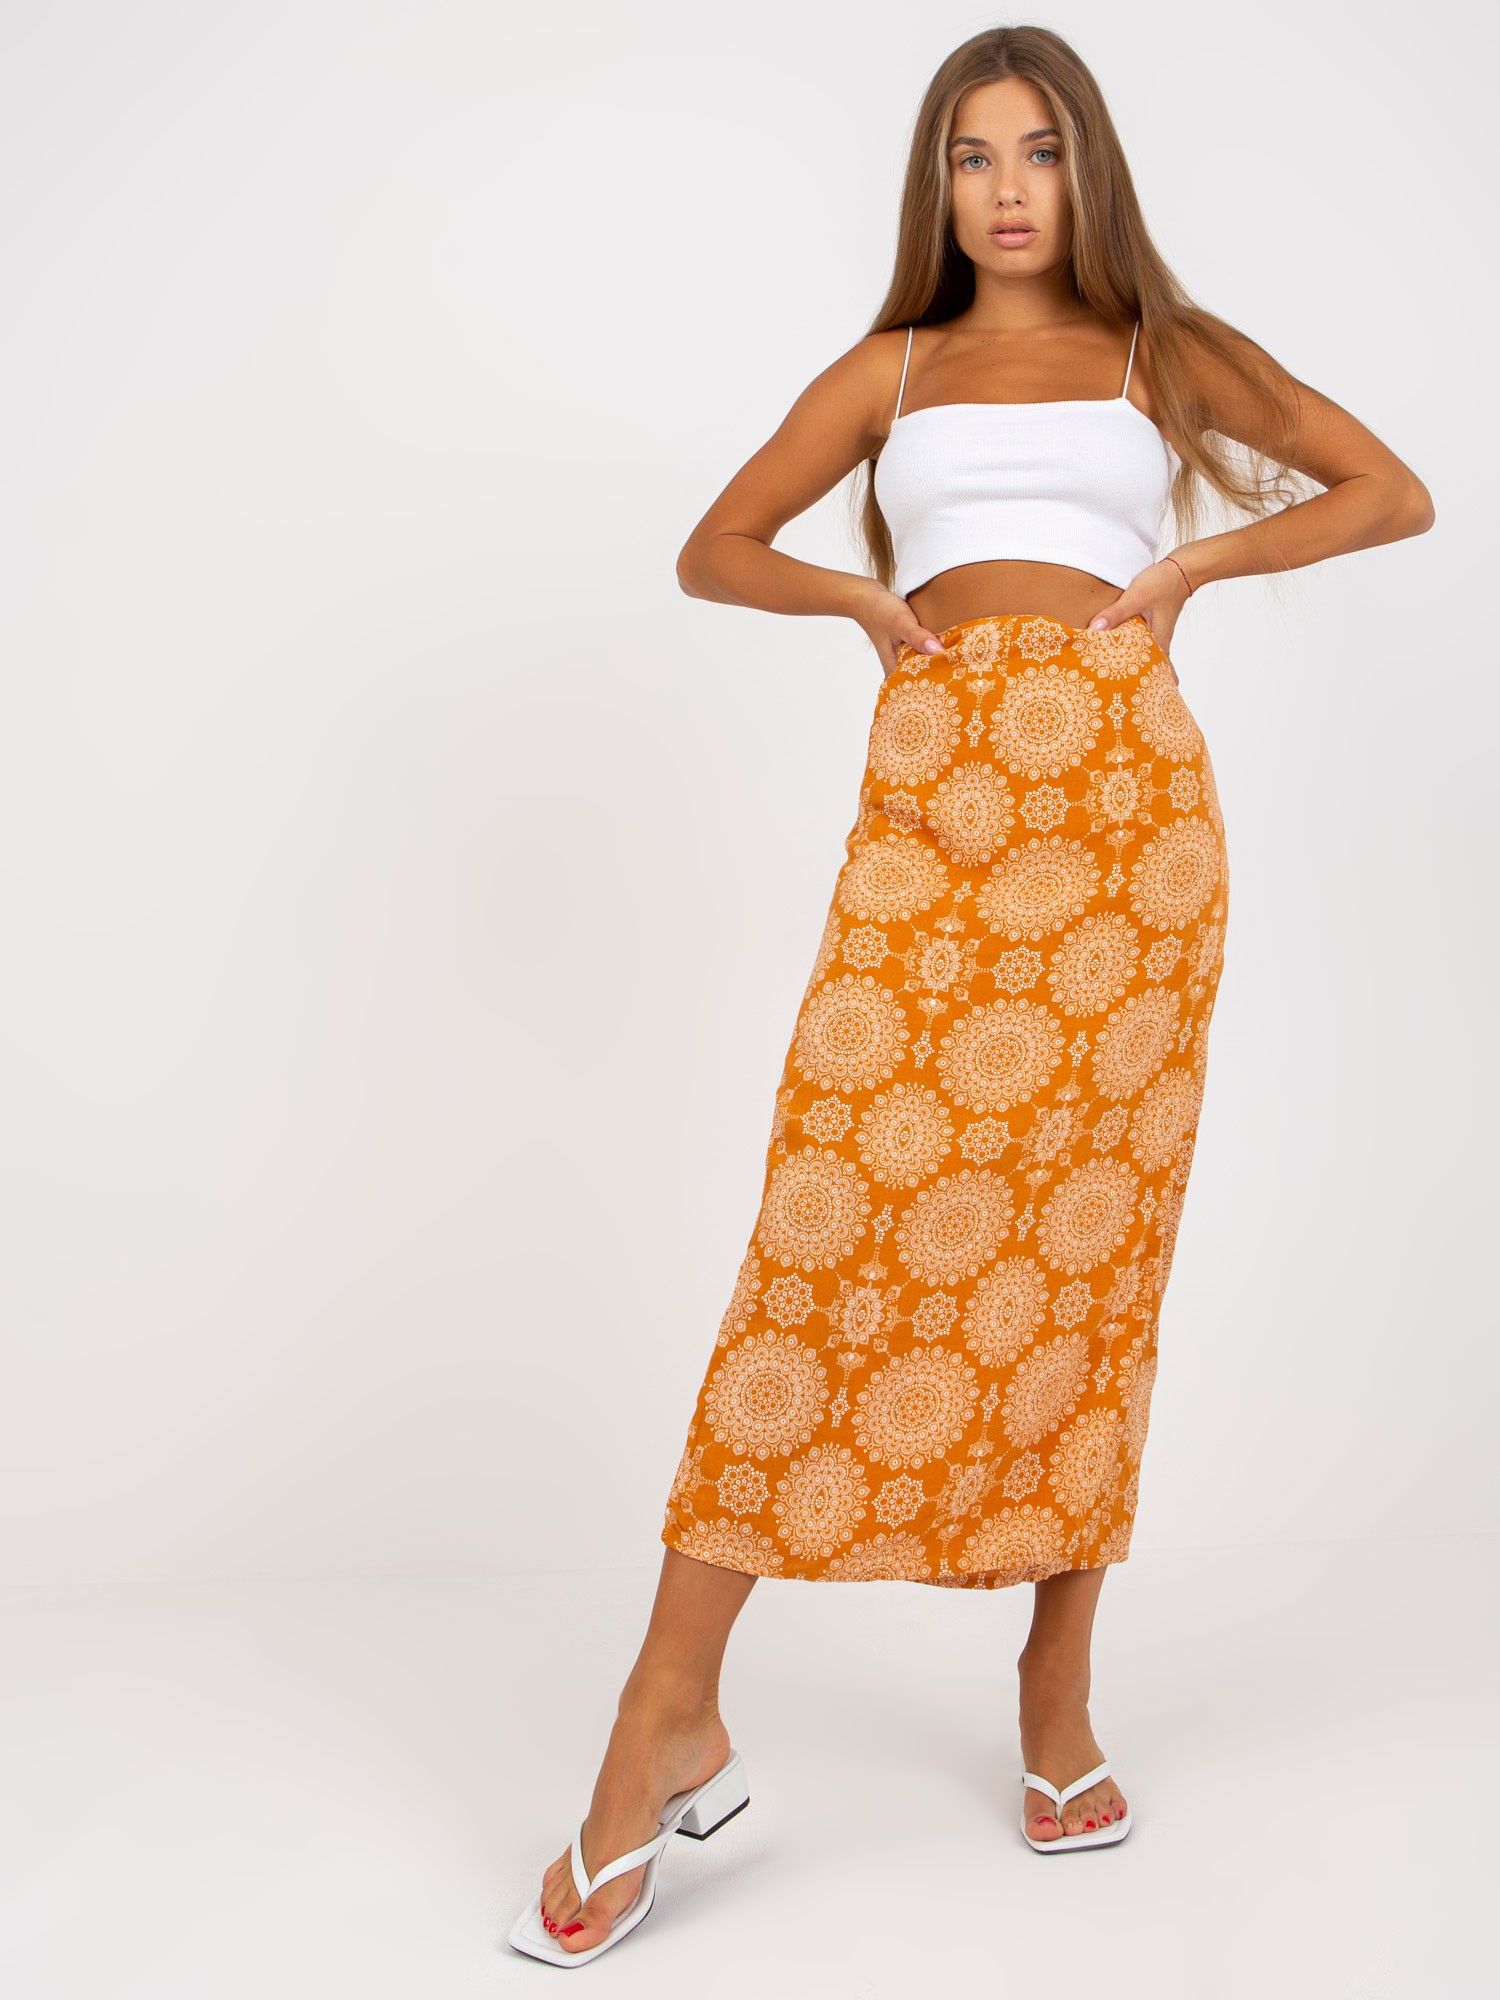 Oranžová zavinovací sukně se vzory D73781M50200A-orange Velikost: M/L